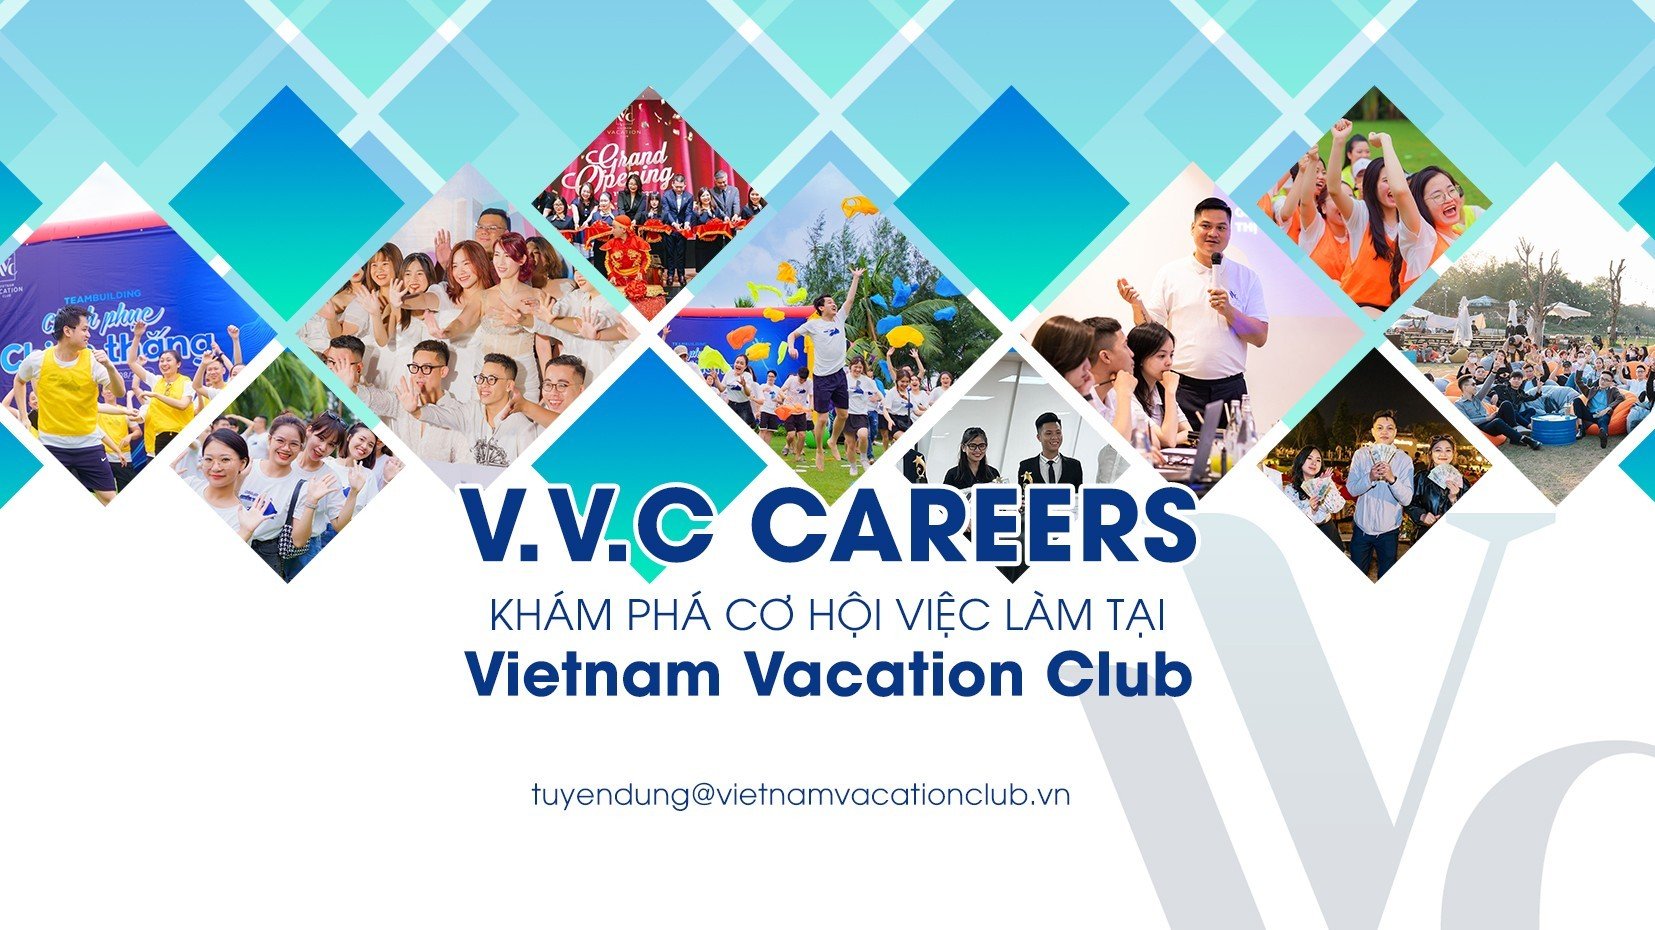 Vietnam Vacation Club